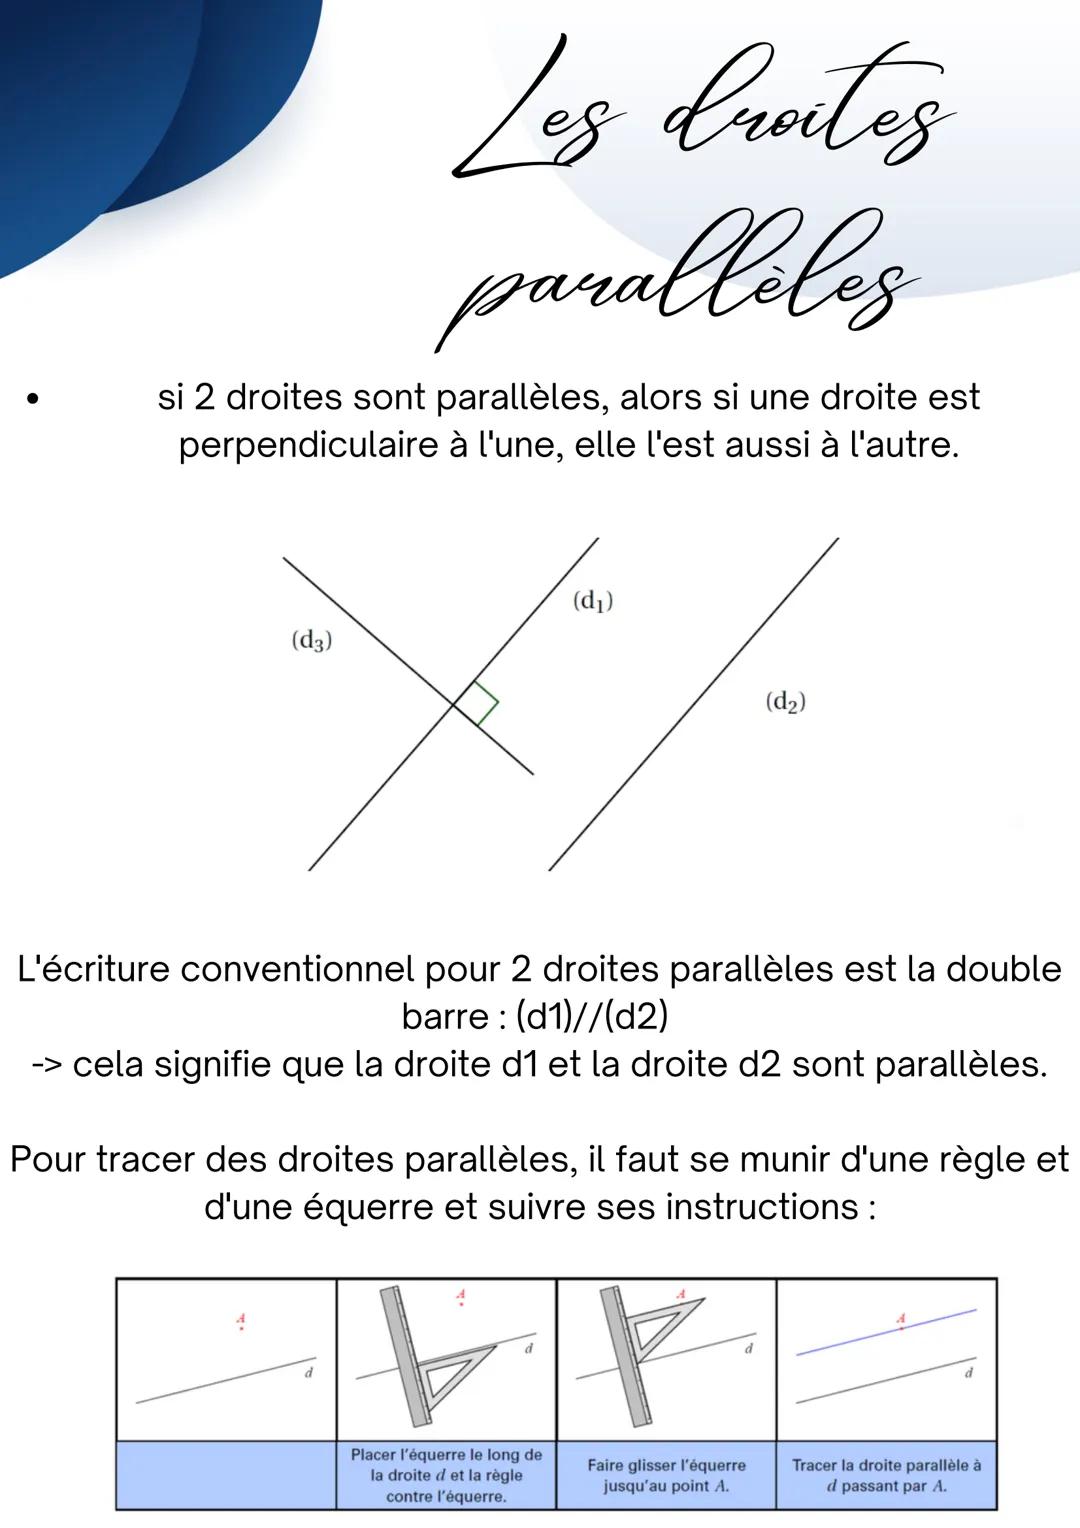 Les droites
paralleles
Deux droites sont parallèles si
elles n'ont aucun point en
commun.
(d3)
(d₂)
Deux droites qui sont parallèles ne sont